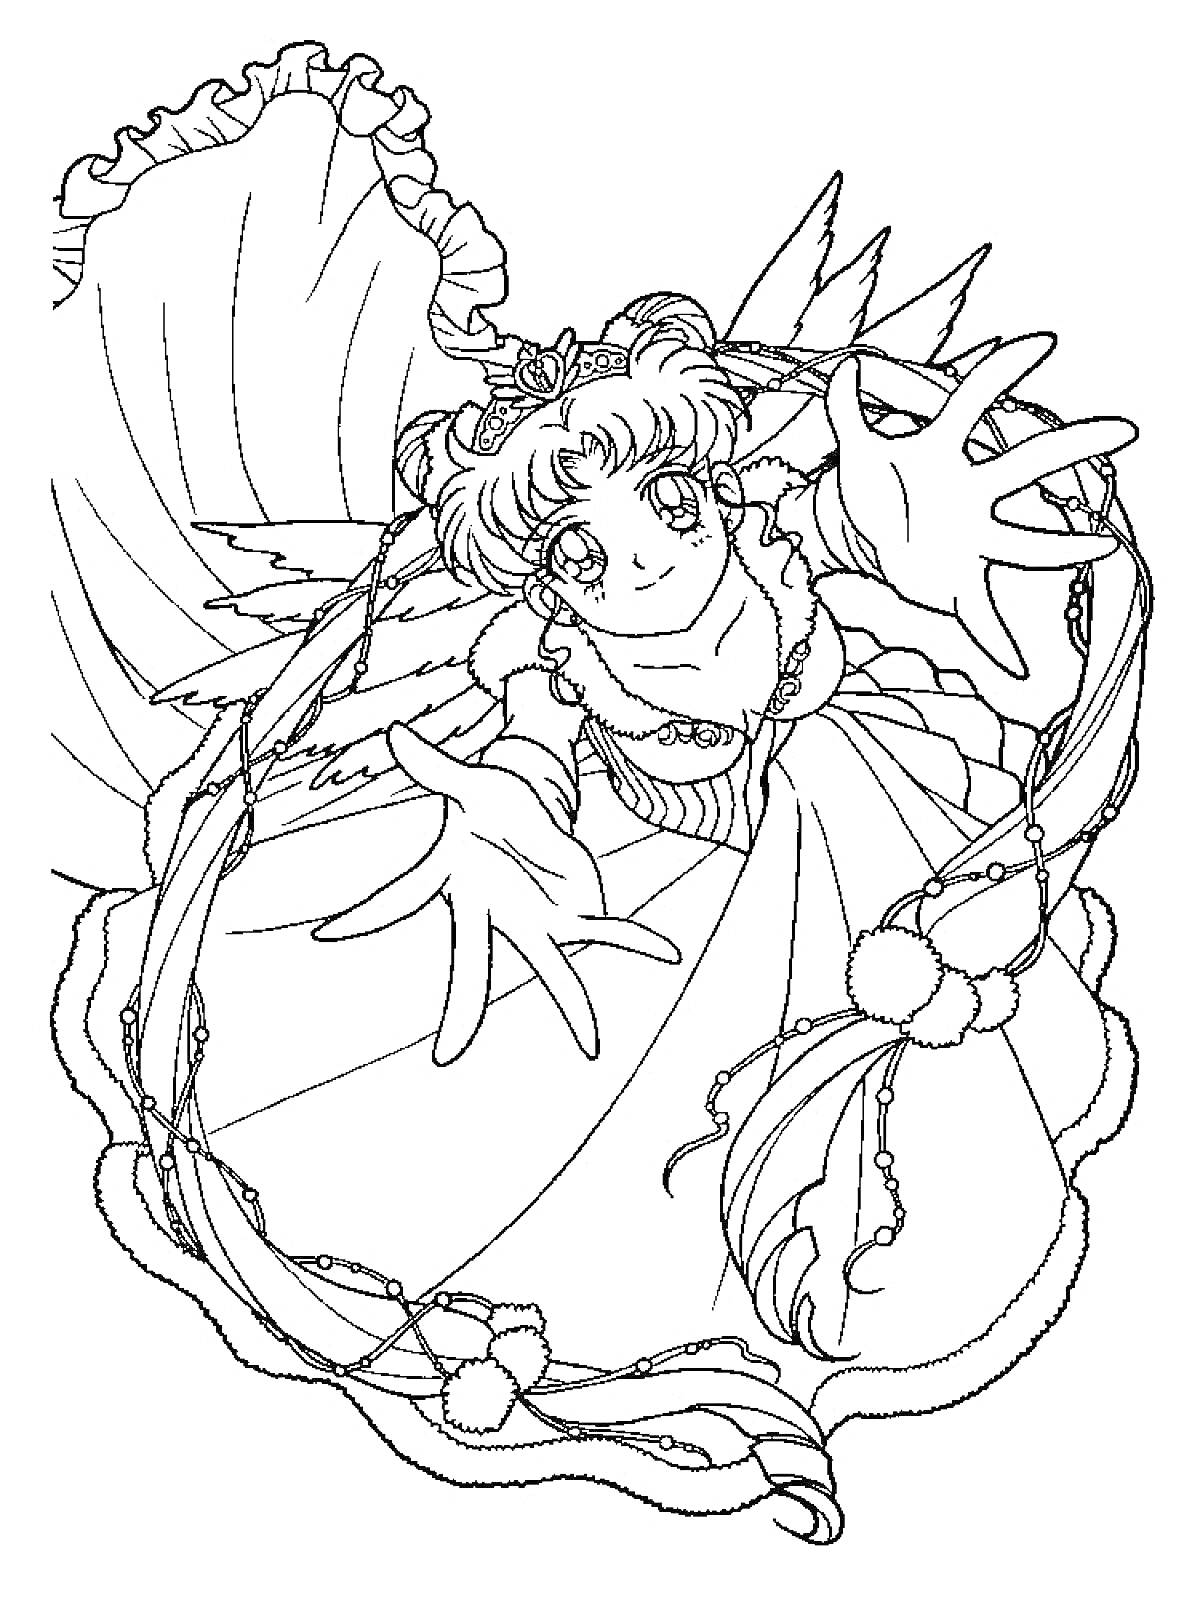 Раскраска Сейлормун с распущенными волосами и рюшами, в длинном платье с украшениями, с приподнятыми руками